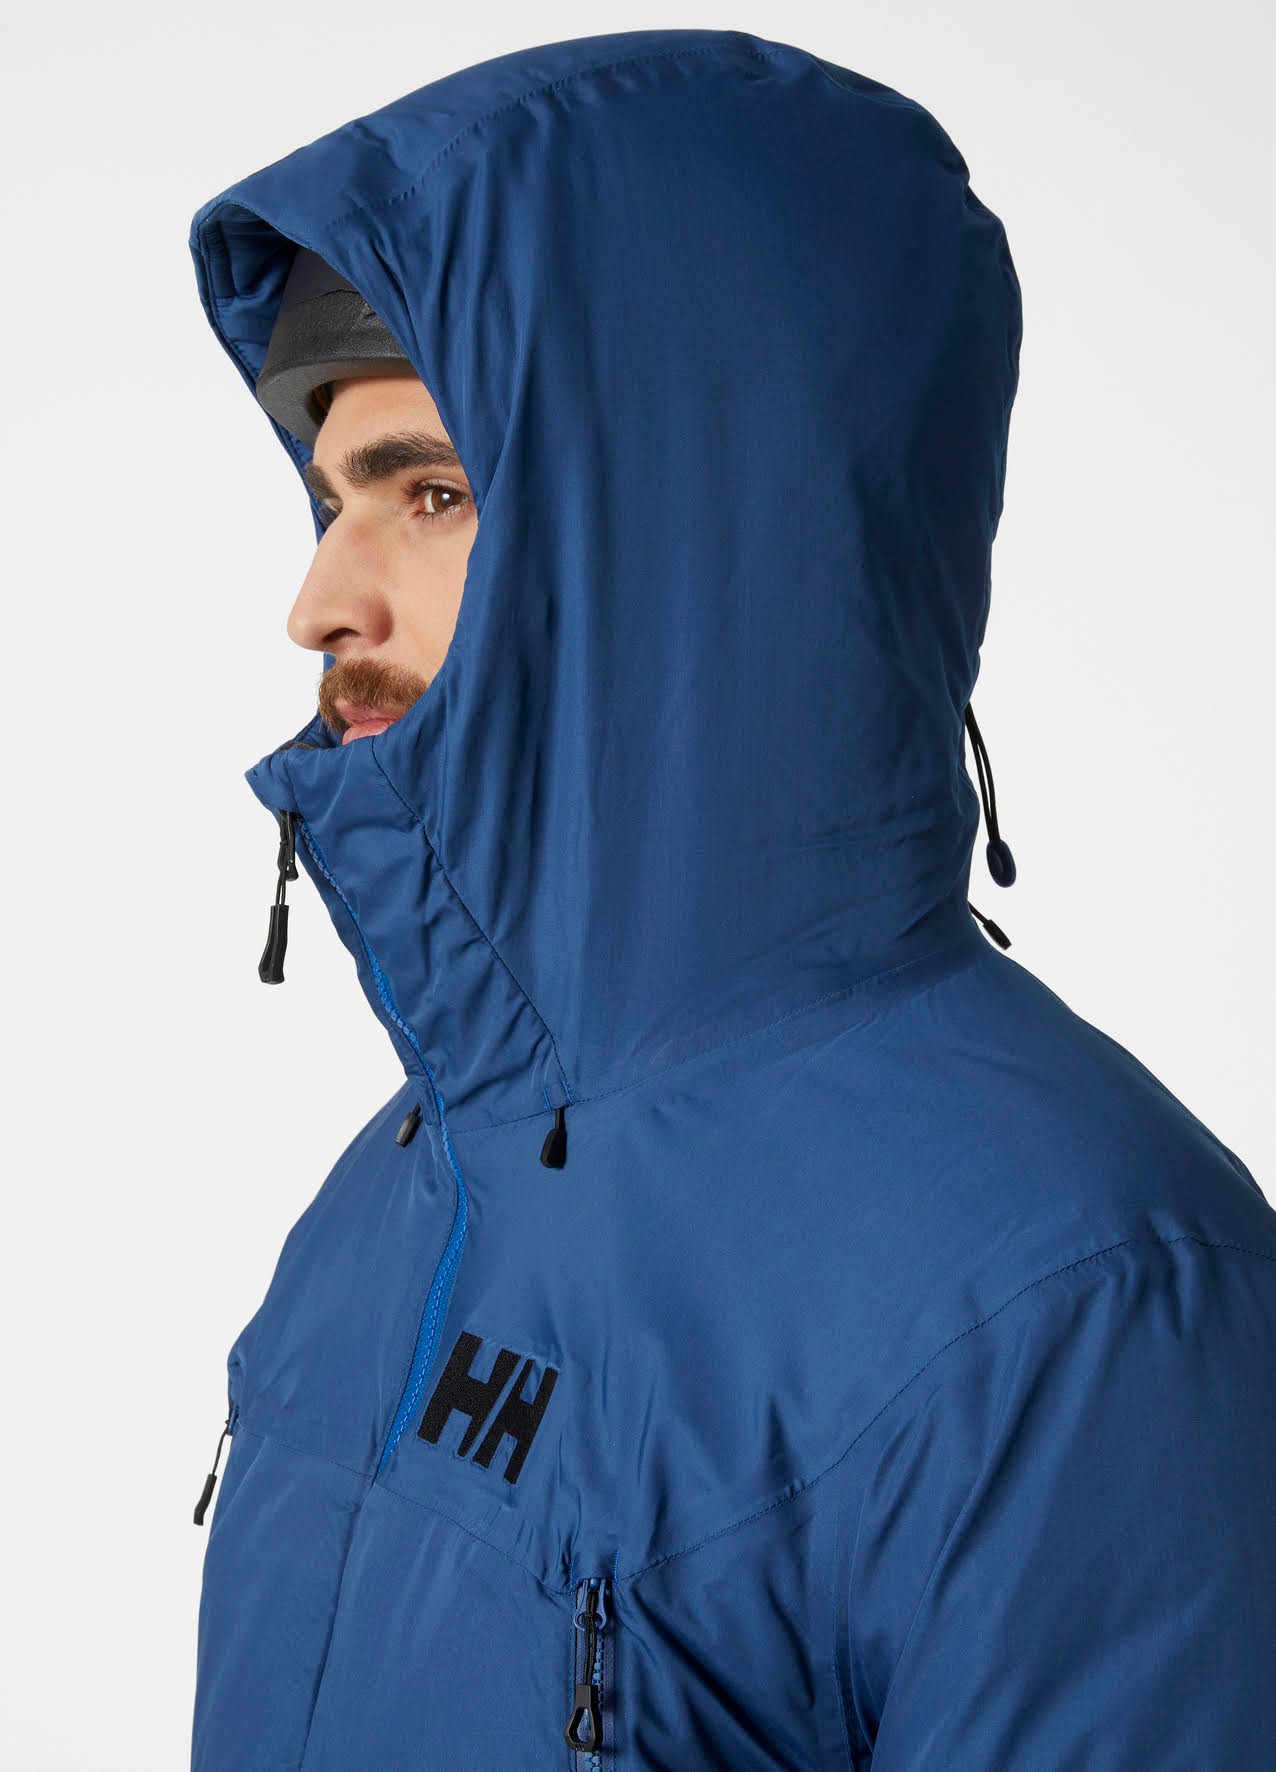 Helly Hansen presenta la chaqueta más cálida, transpirable y funcional